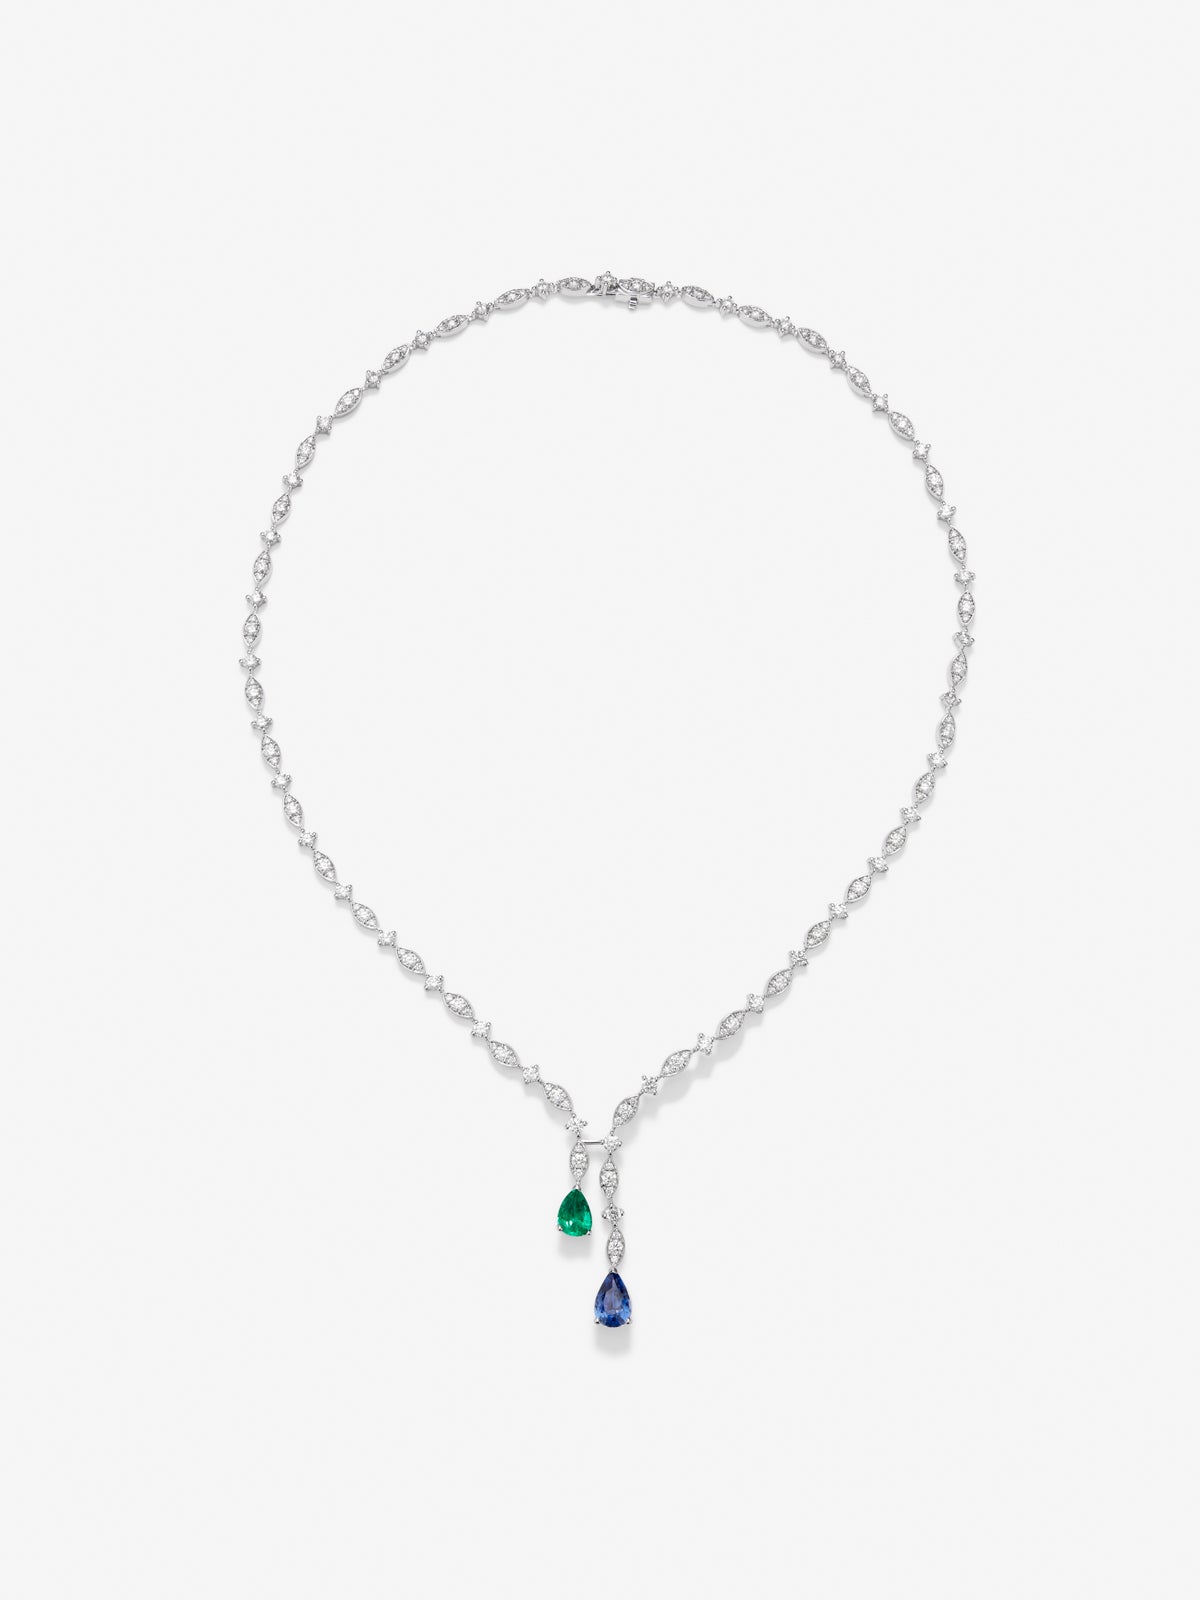 Collar de oro blanco de 18K con zafiro azul intenso en talla pera de 1,76 cts, esmeralda verde en talla pera de 0,96 cts y 163 diamantes en talla brillante con un total de 6,48 cts